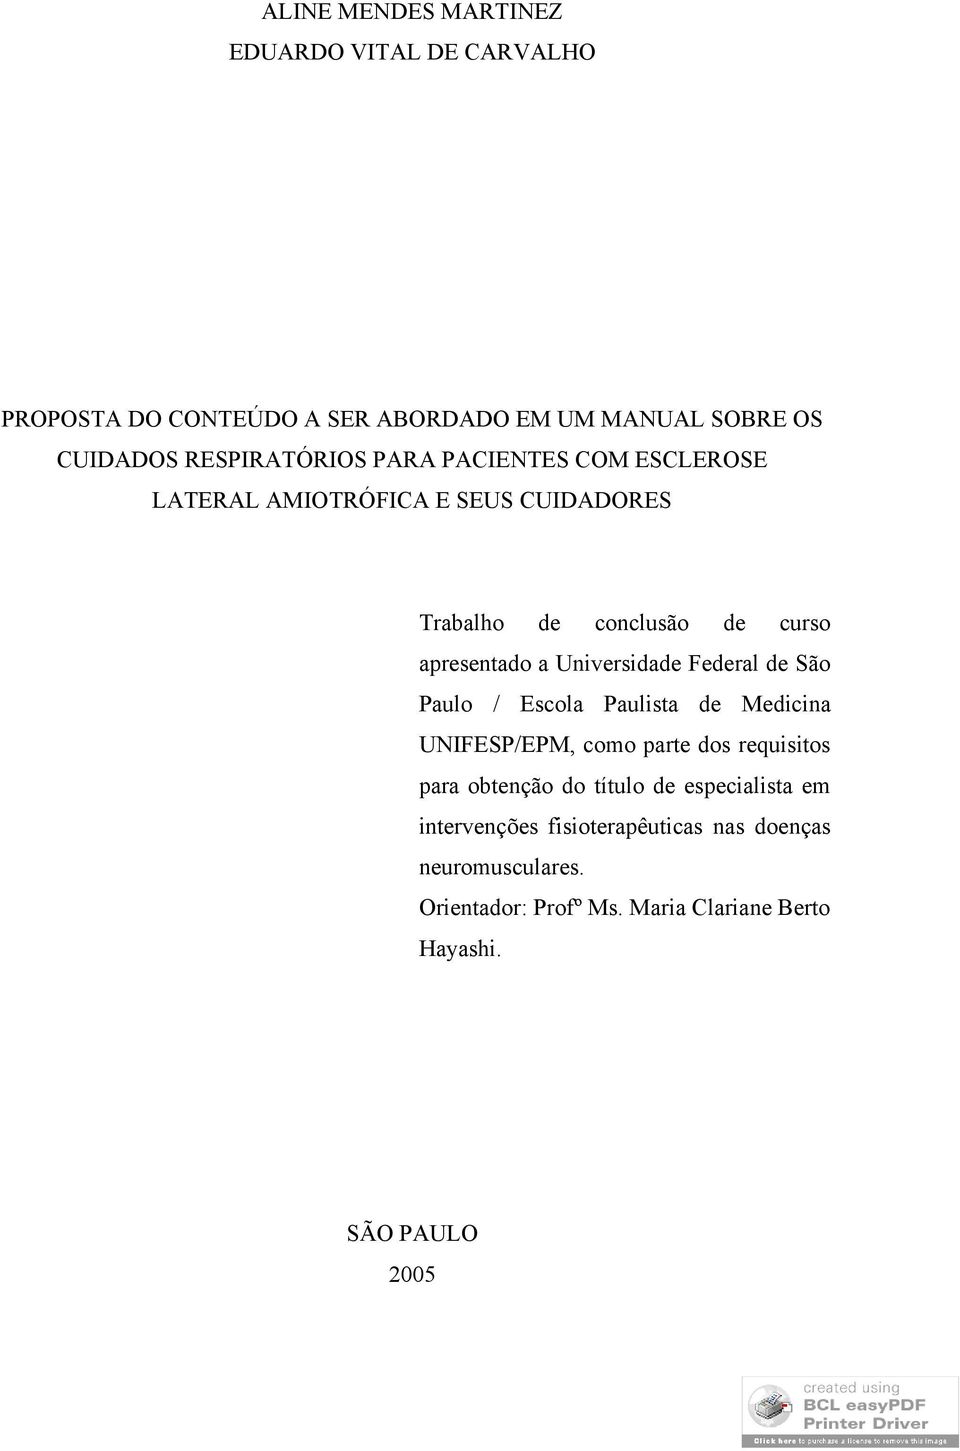 Federal de São Paulo / Escola Paulista de Medicina UNIFESP/EPM, como parte dos requisitos para obtenção do título de